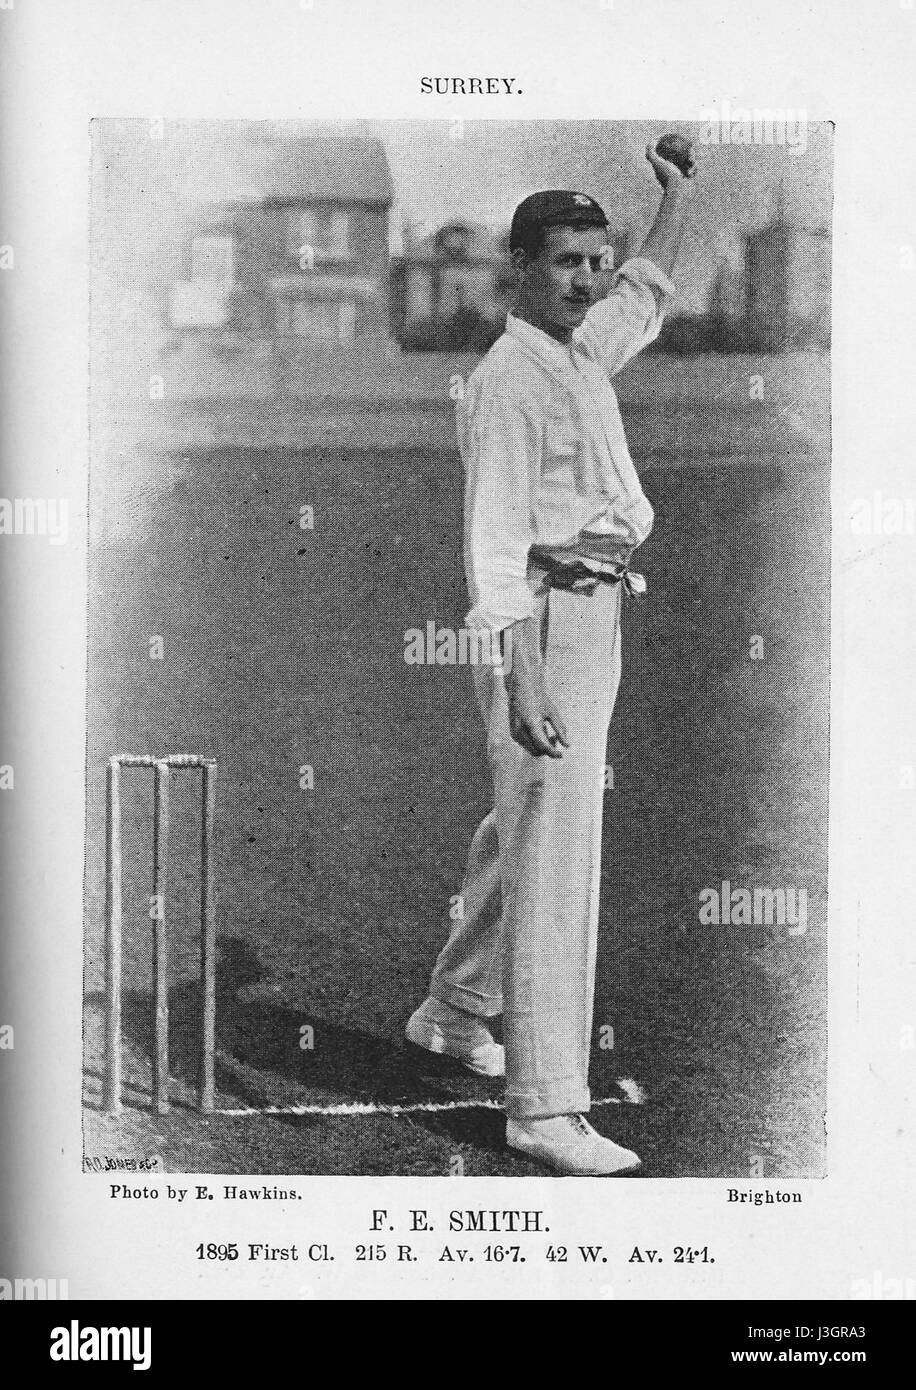 Frank Smith umpire Stock Photo